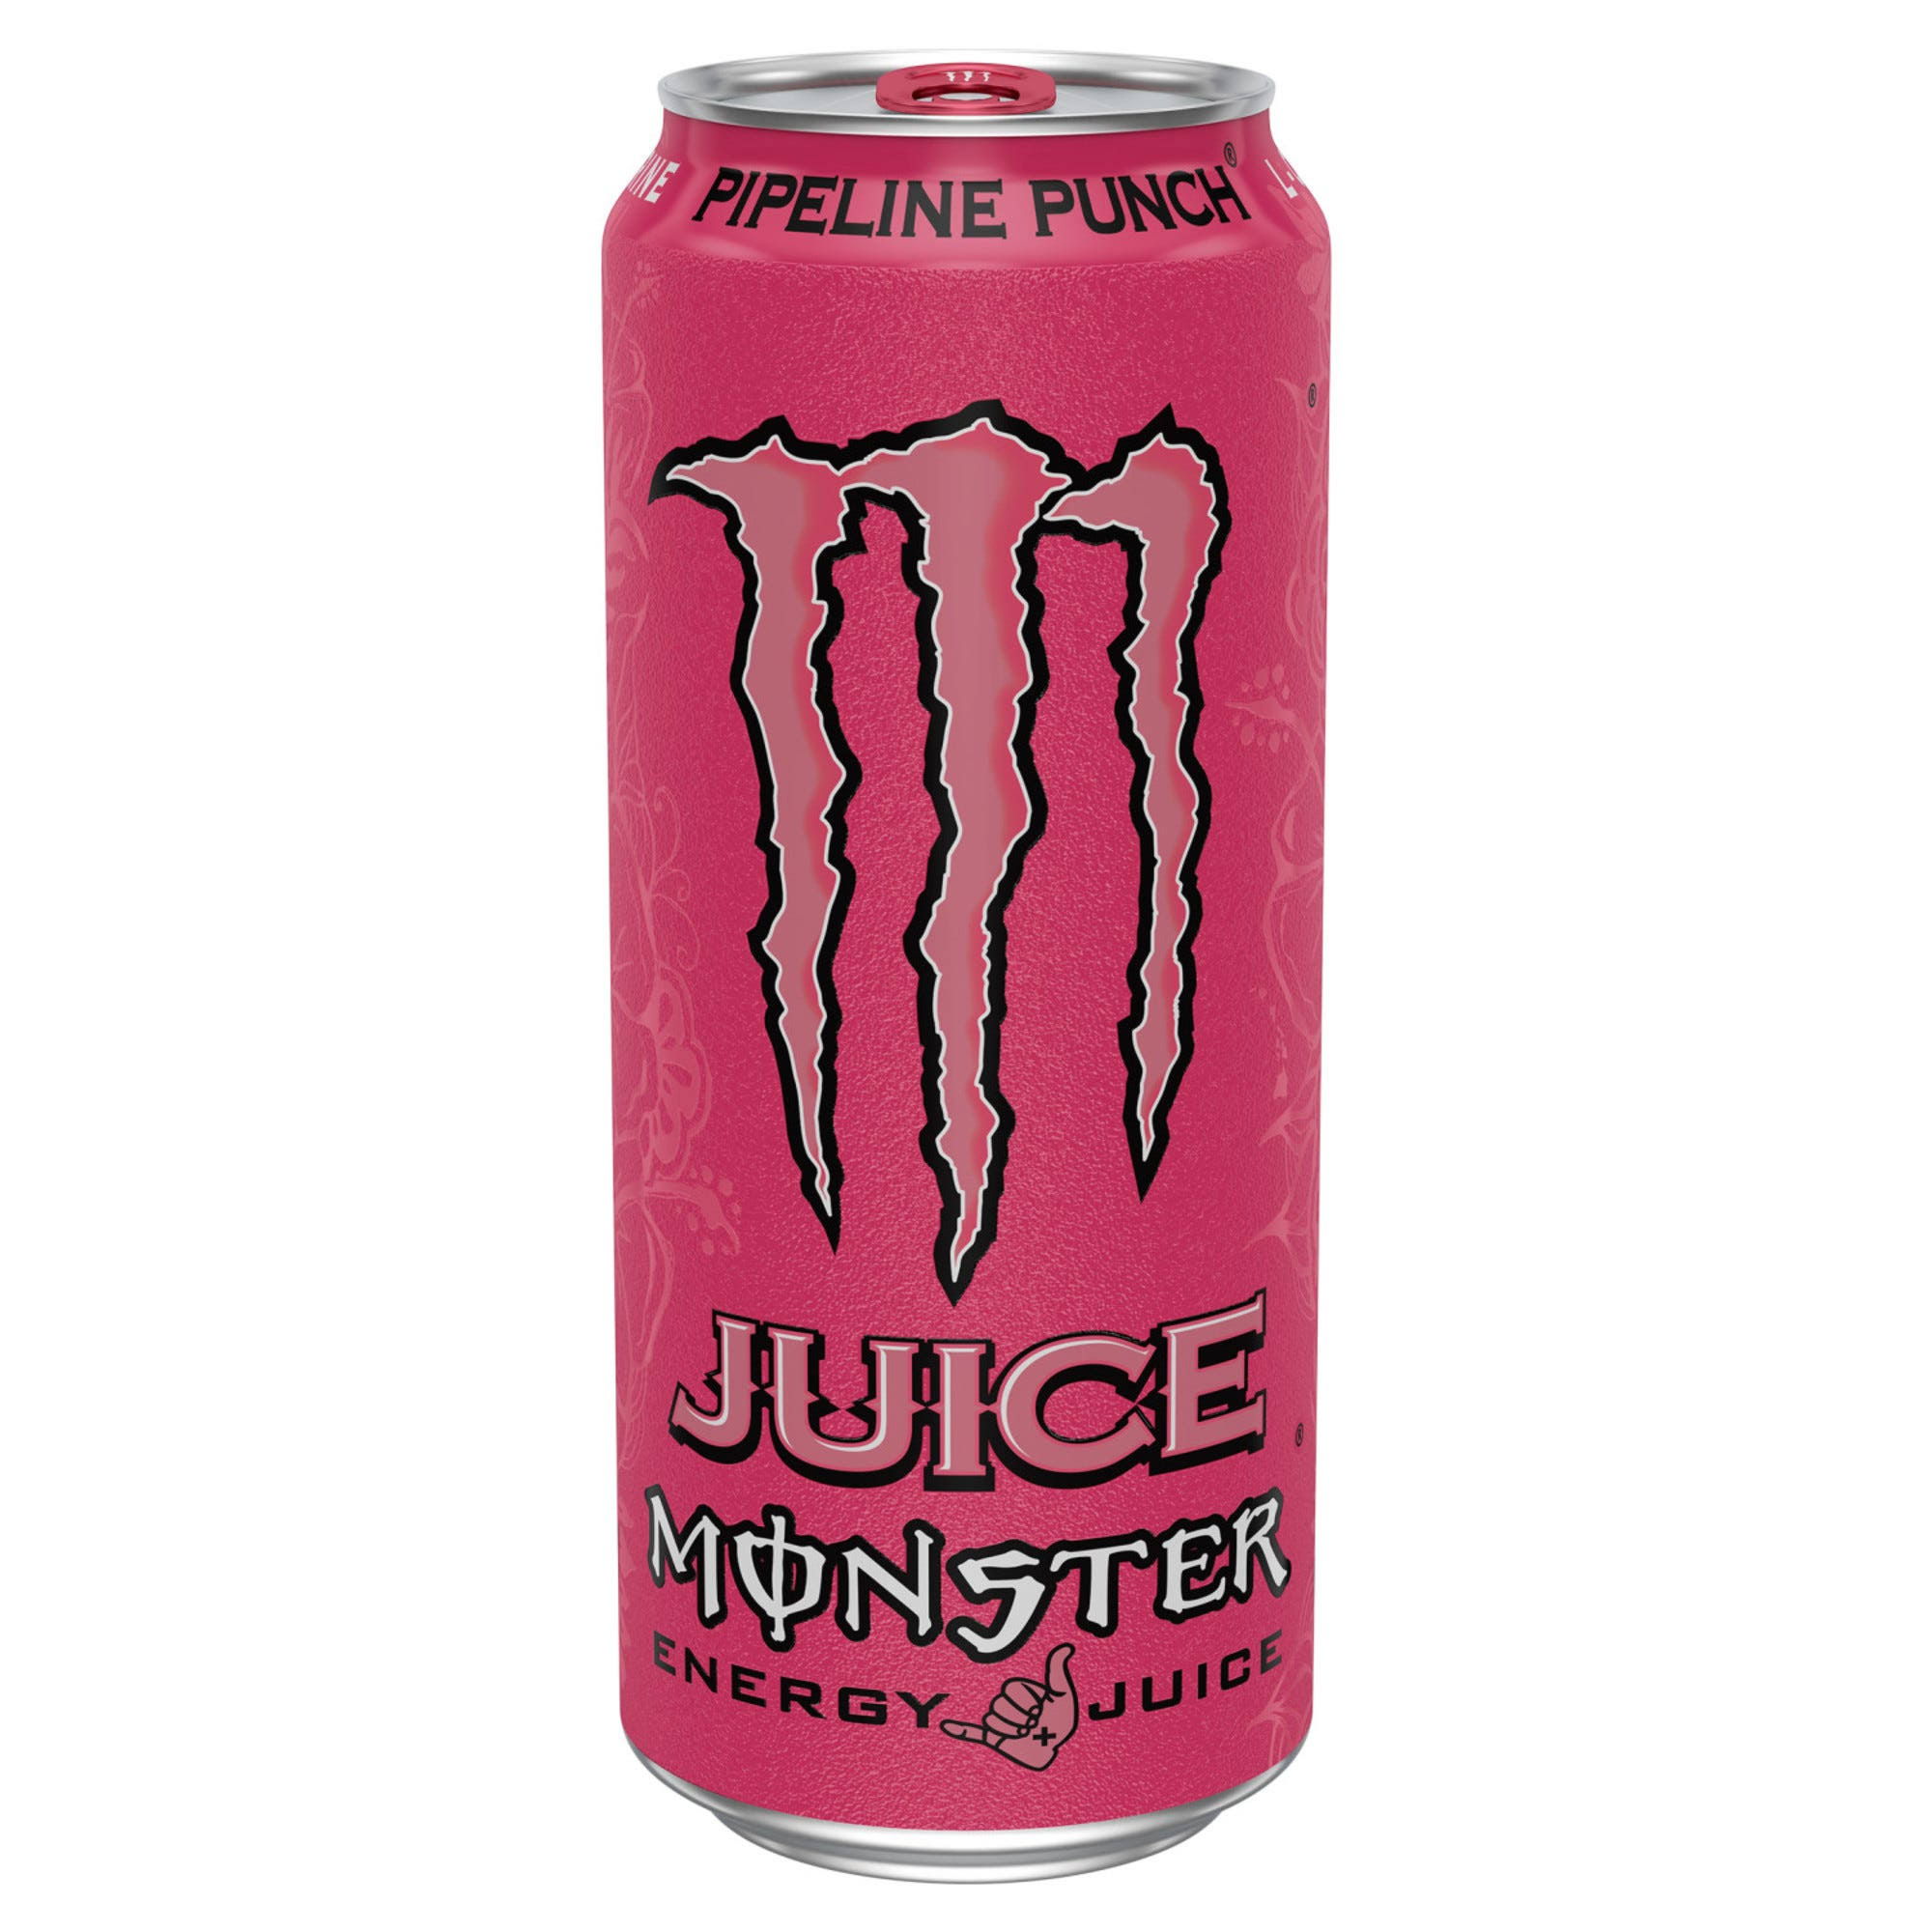 Monster Energy Juice - Pipeline Punch, 470ml